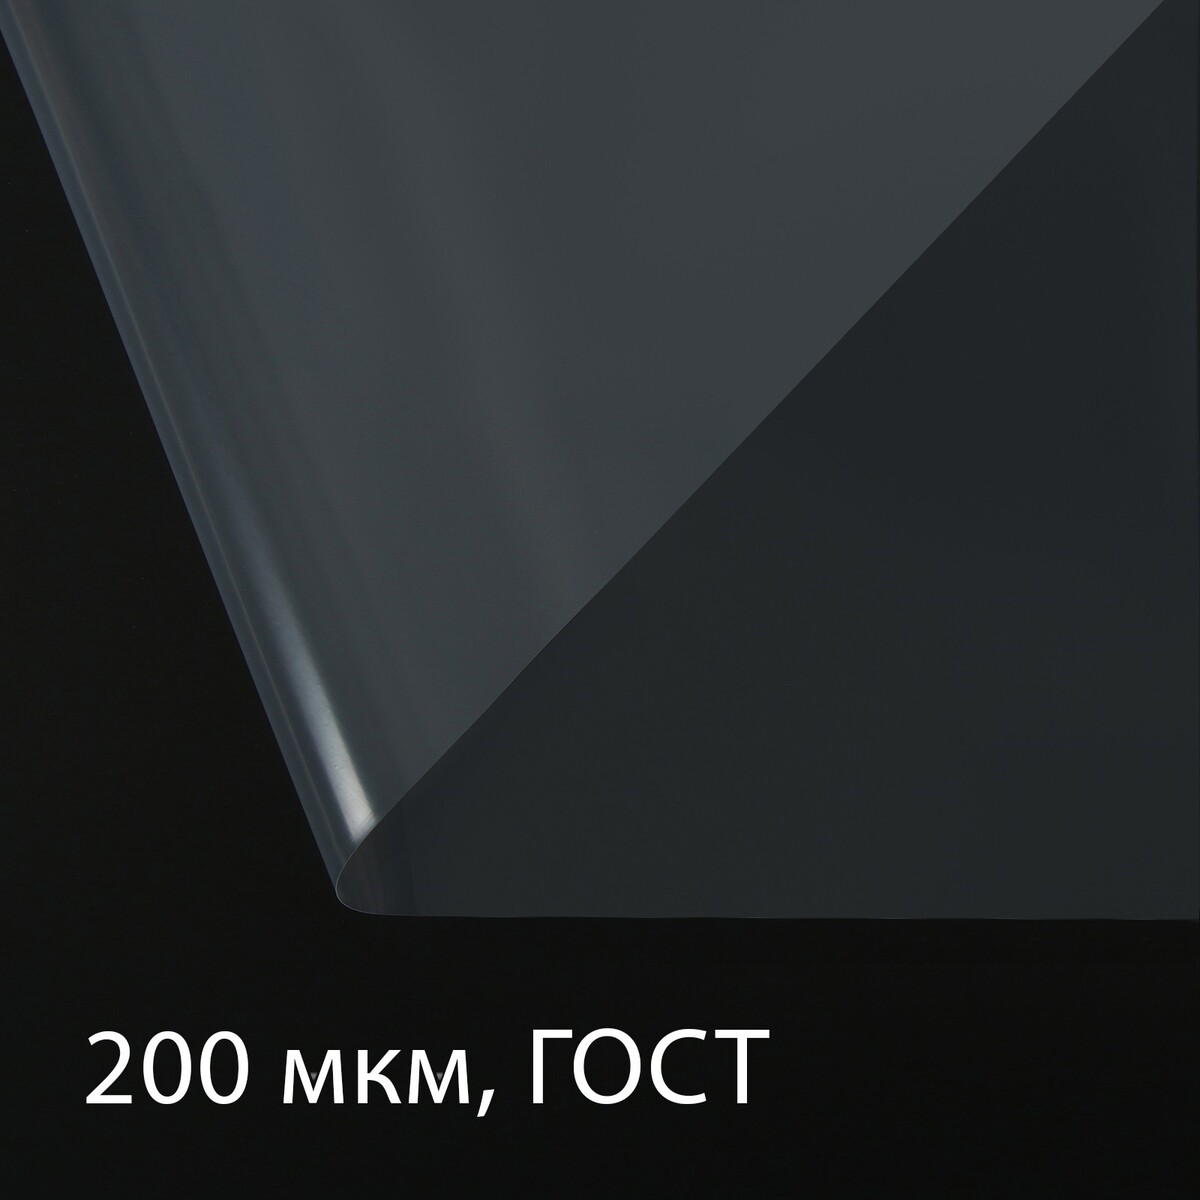 Пленка полиэтиленовая, толщина 200 мкм, прозрачная, 10 × 3 м, рукав (1.5 м × 2), гост 10354-82, greengo